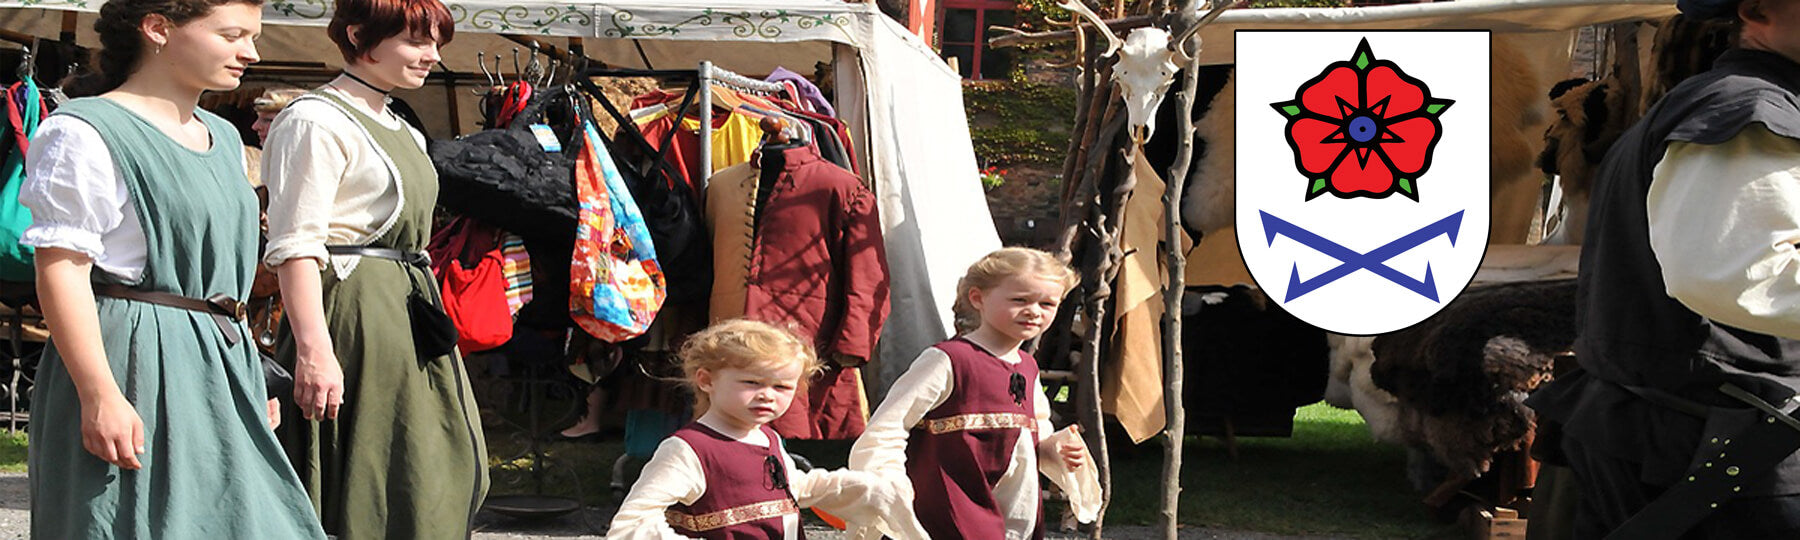 Mittelalterkleidung zur Mittelaltermeile beim Altstadtfest in Gernsbach